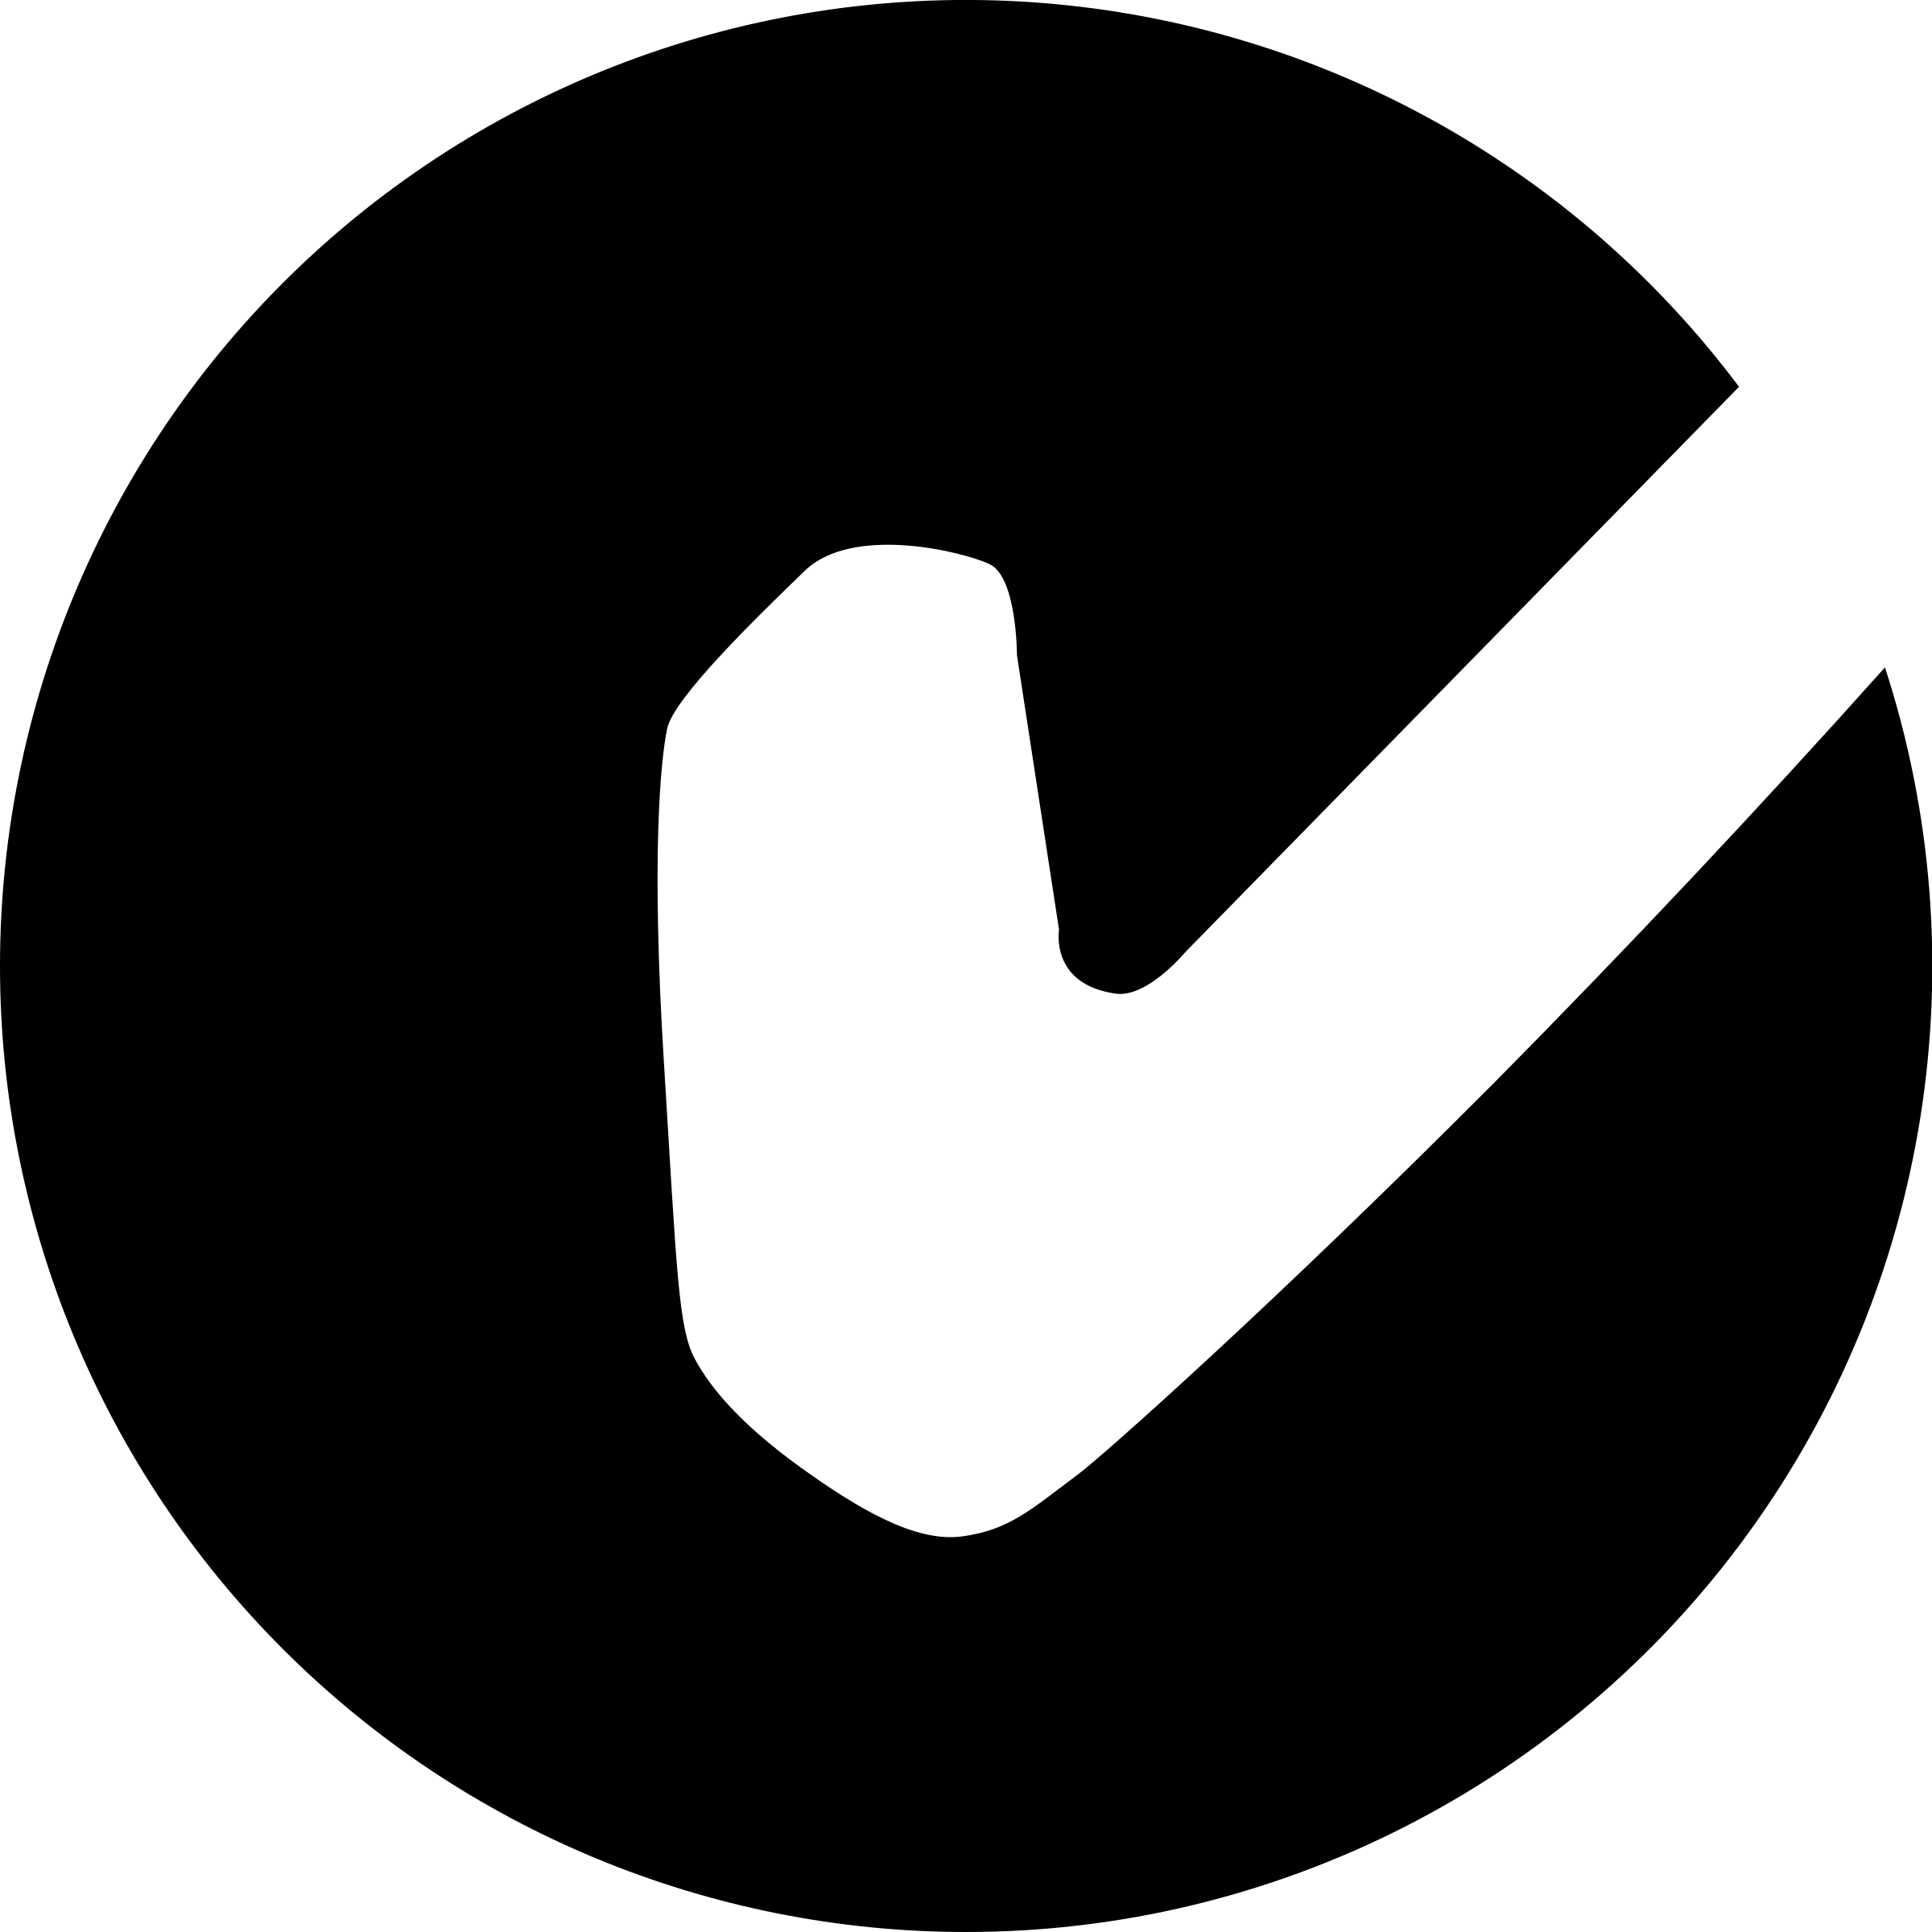 C Tick Logo Png Transparent - C Tick Logo Png (2400x2400), Png Download